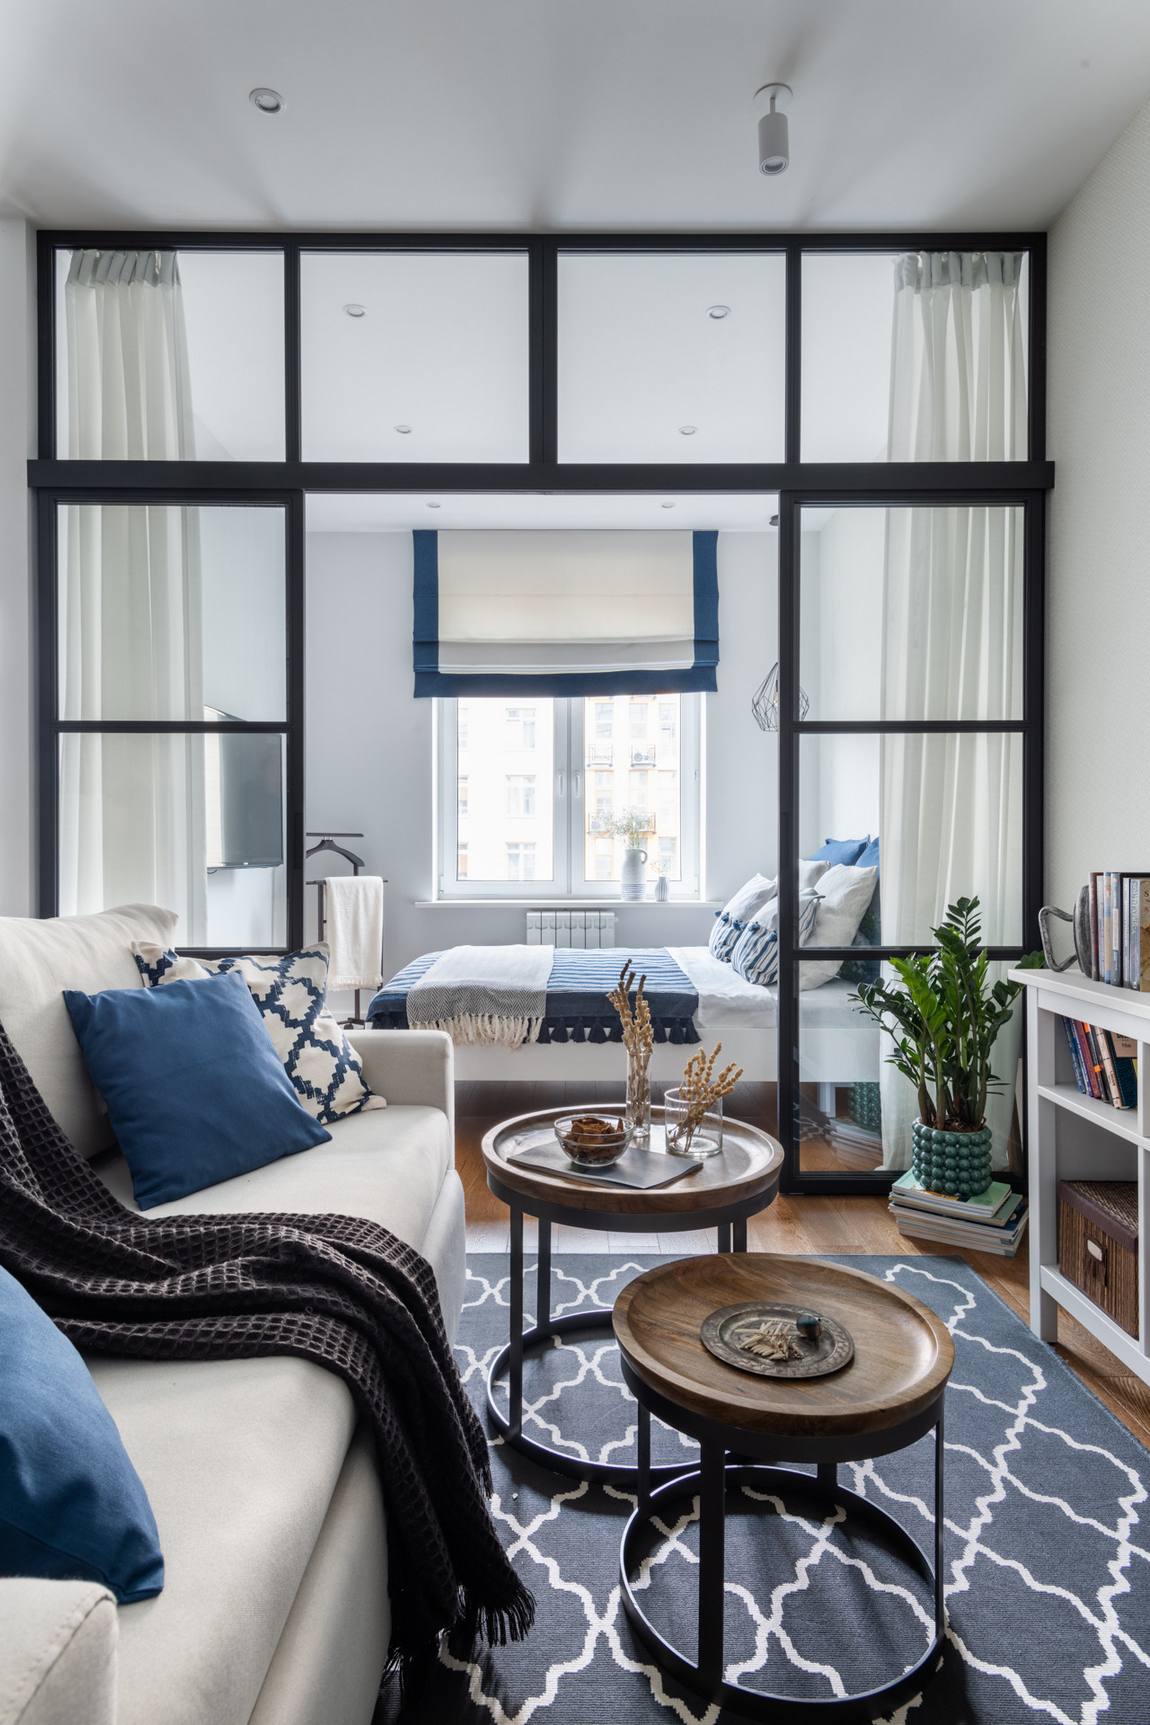 Cải tạo căn hộ 46m² với nội thất màu xanh lam cho vẻ đẹp yên bình, tinh tế của cặp vợ chồng son - Ảnh 13